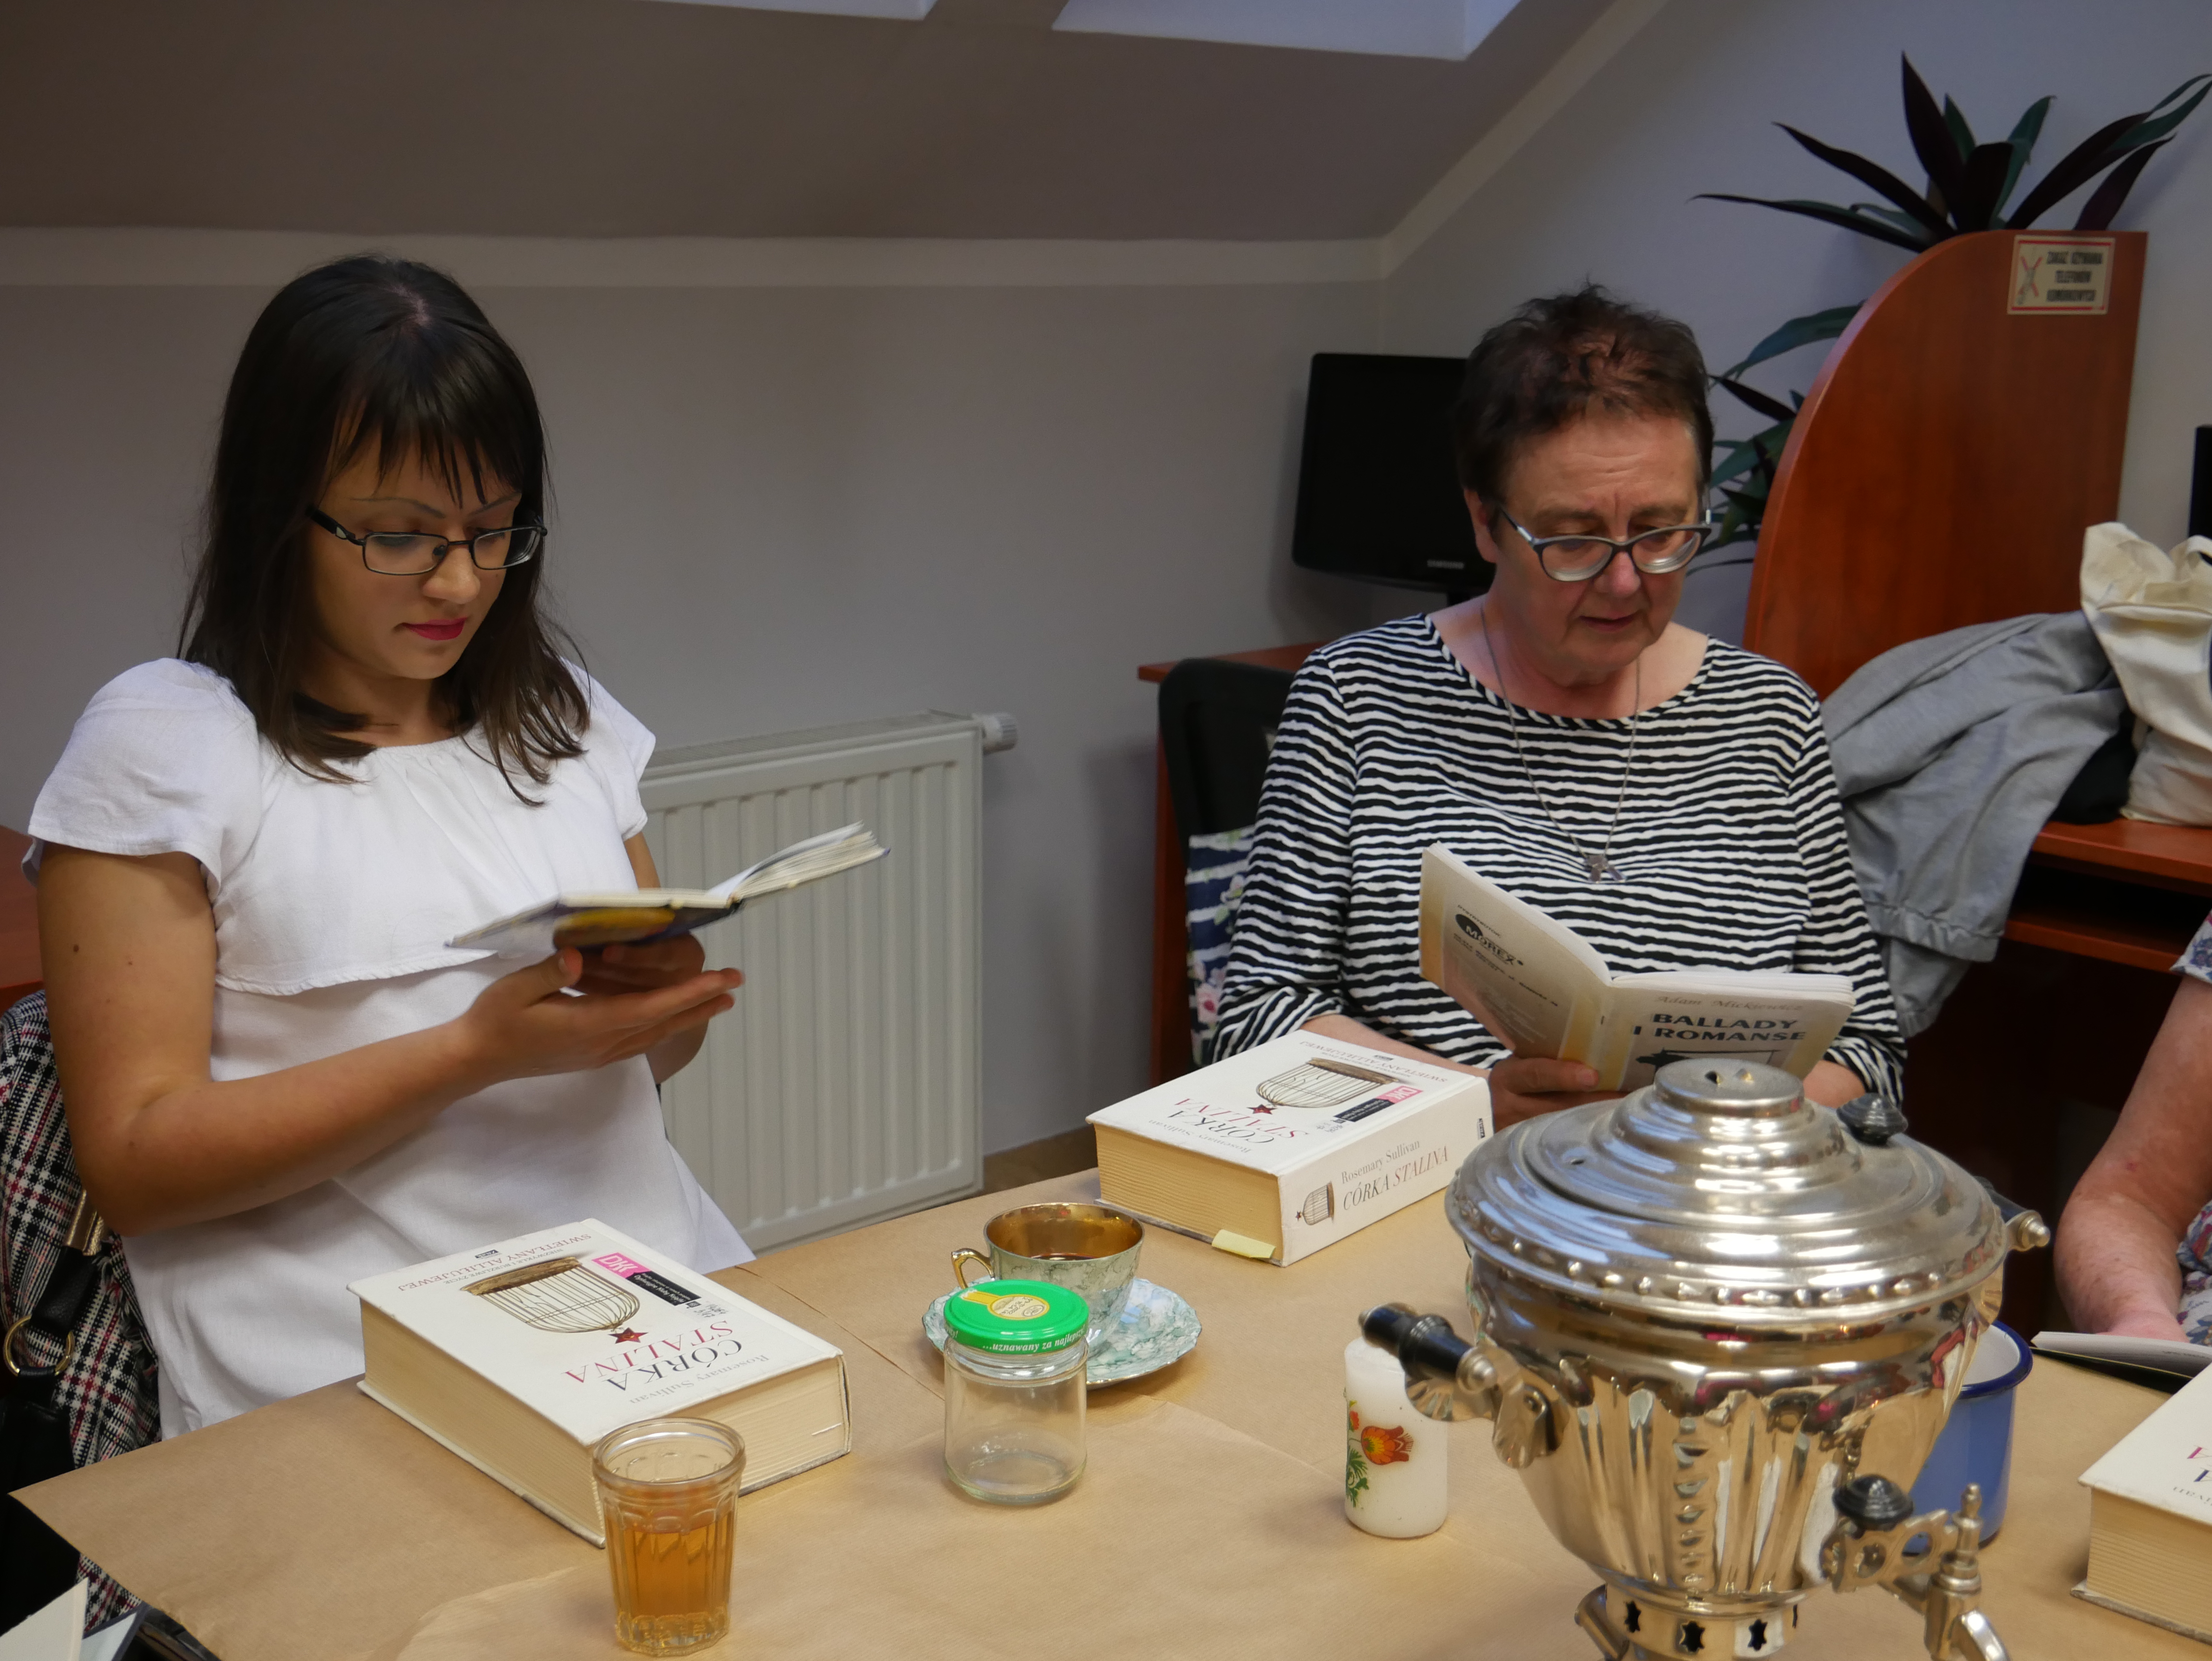 na zjęciu widoczne dwie kobiety siedzące przy stole z książkami w dłoniach